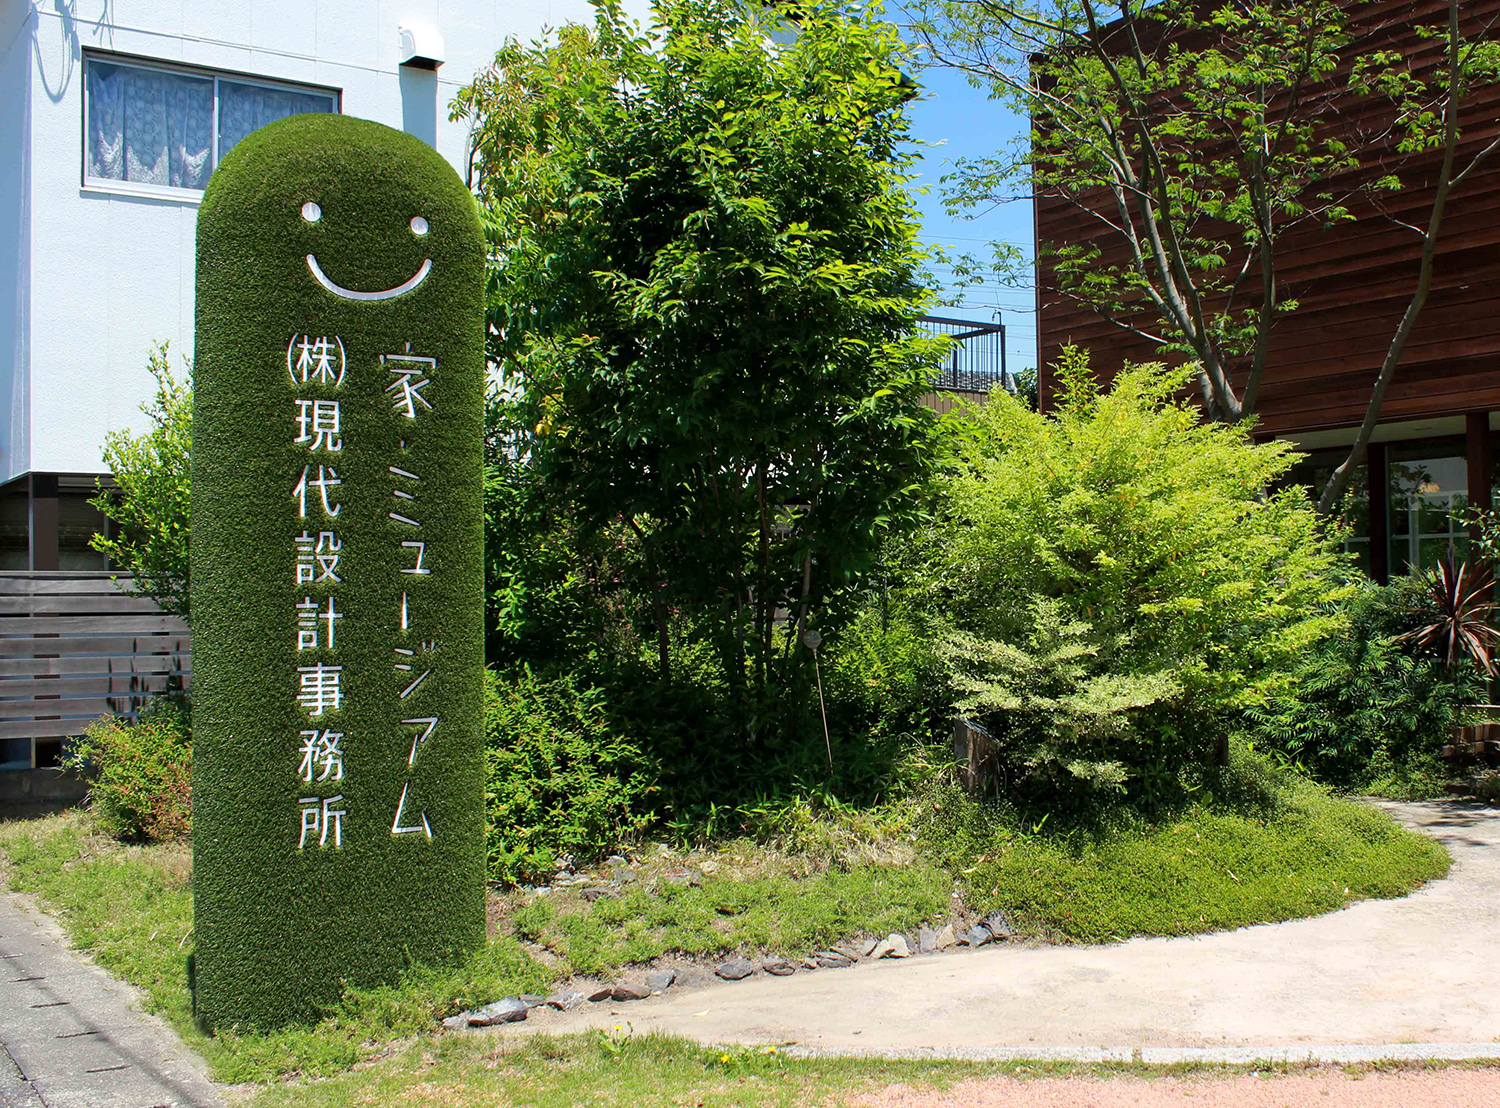 人工芝を張り込んだ自立看板シバフマン 岐阜県